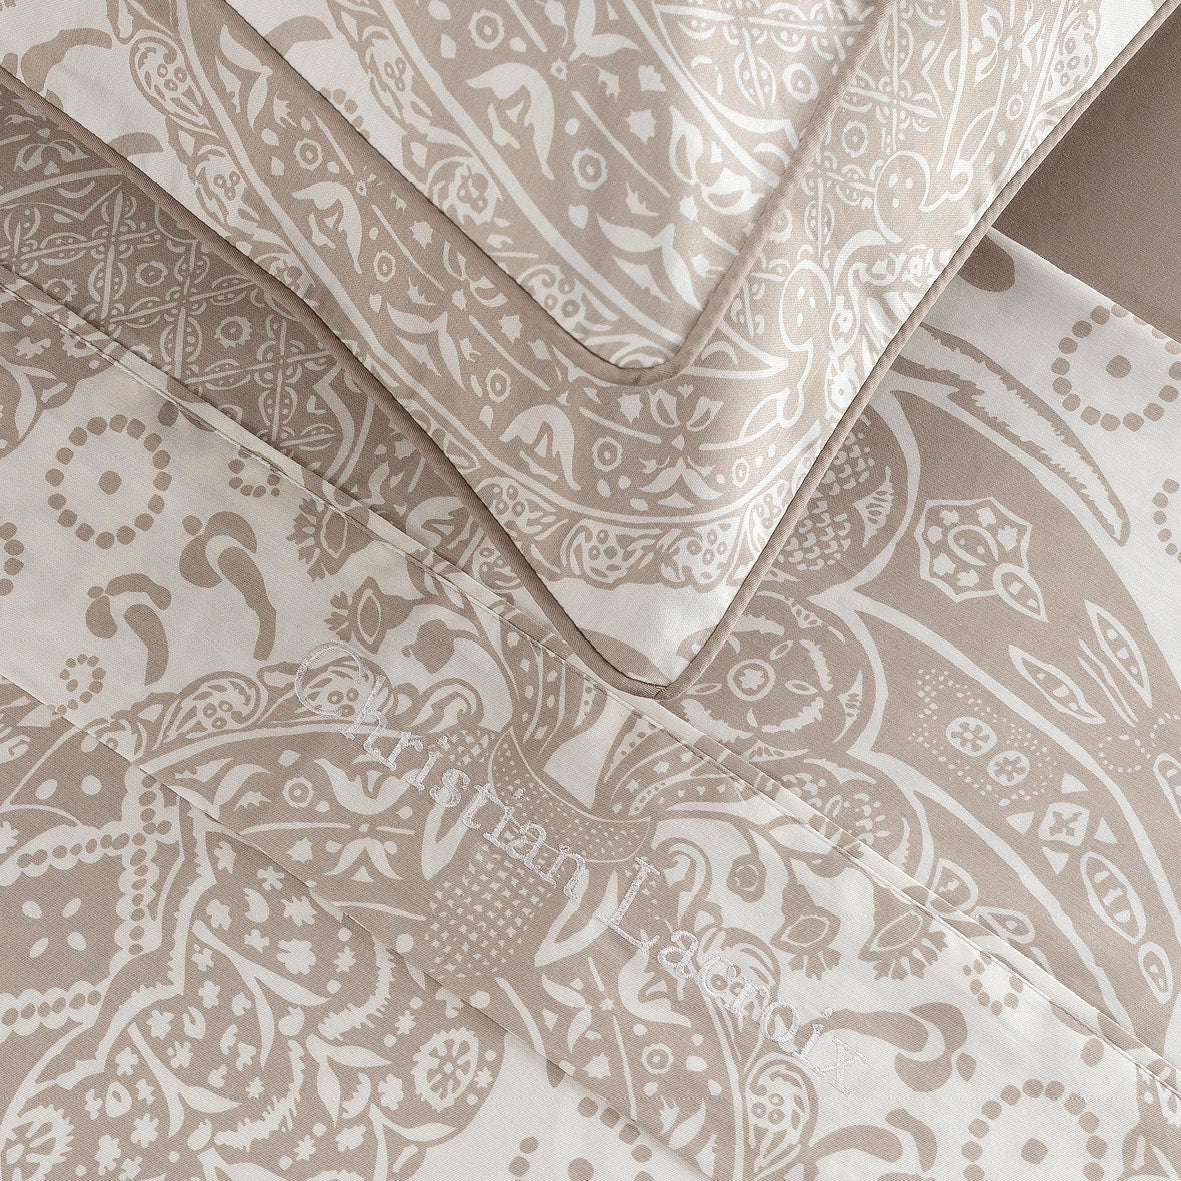 Sheet set: fitted sheet, flat sheet, pillowcase(s) in cotton satin - design: Arles Taupe